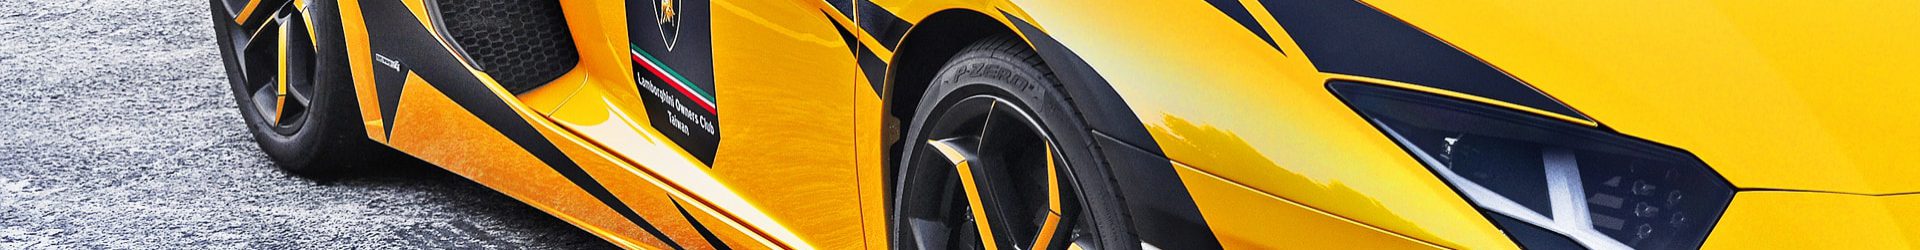 –氣勢依舊– Lamborghini Murcielago & SLR McLaren 同場拍攝開箱